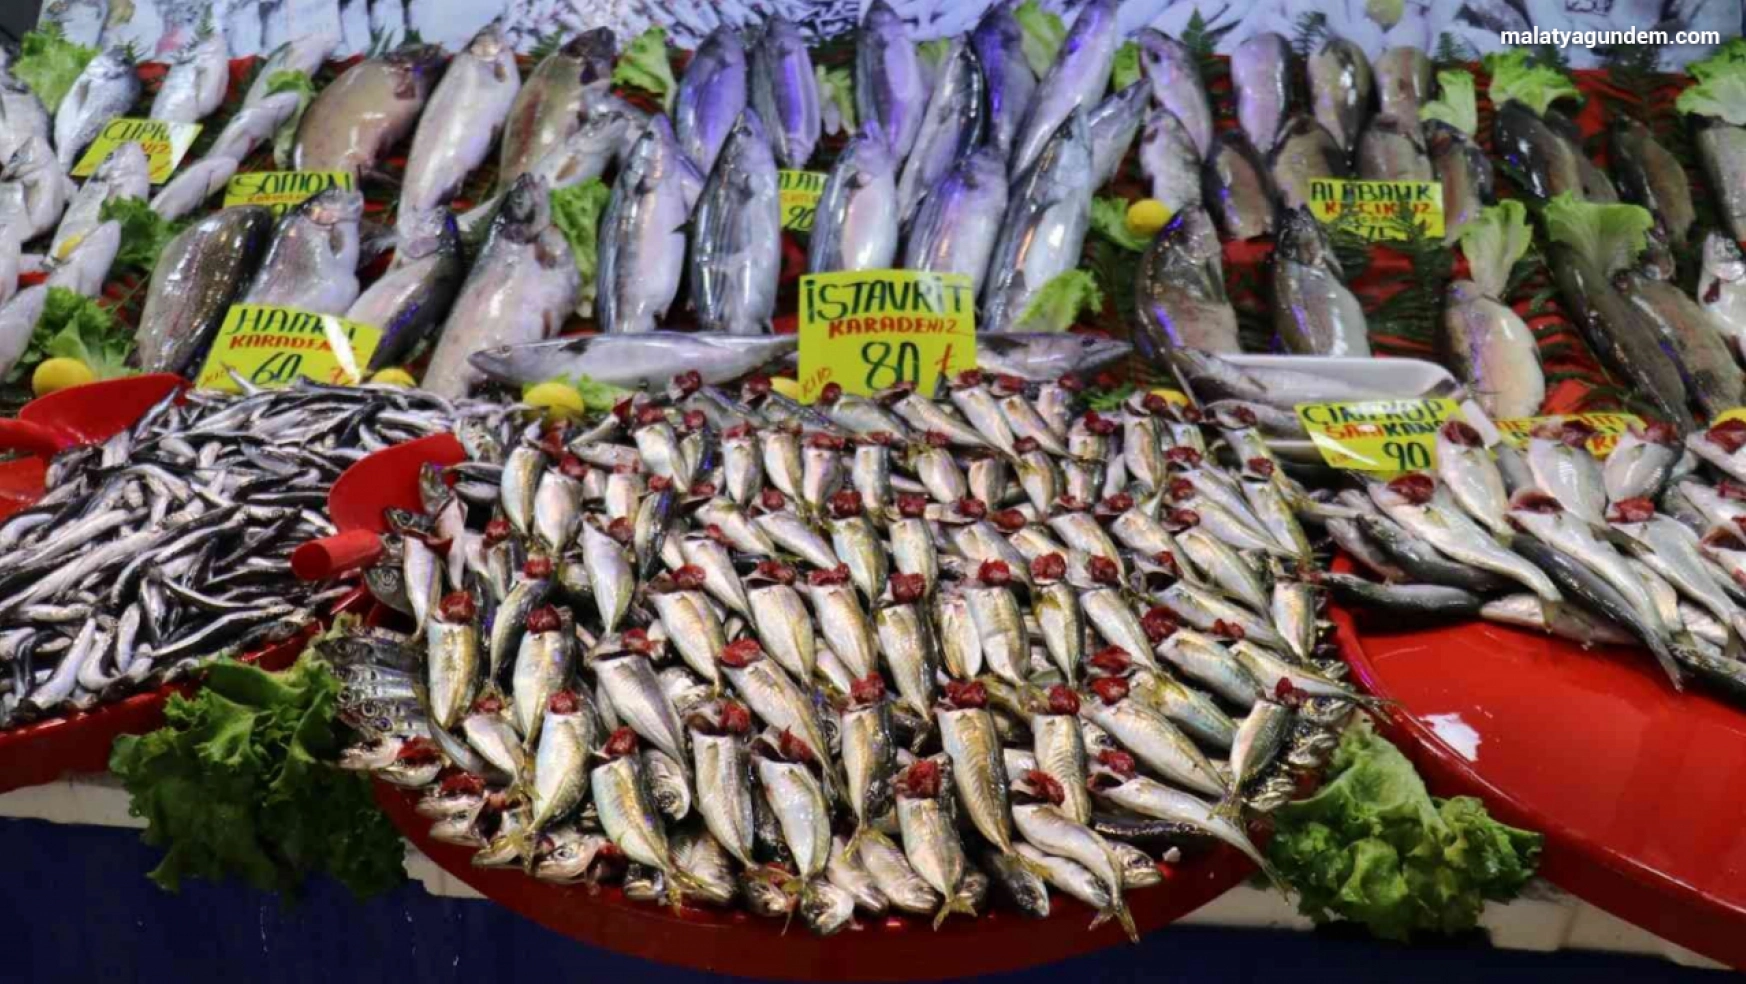 Malatya'da balıkçı tezgahlarının gözdesi 'istavrit'